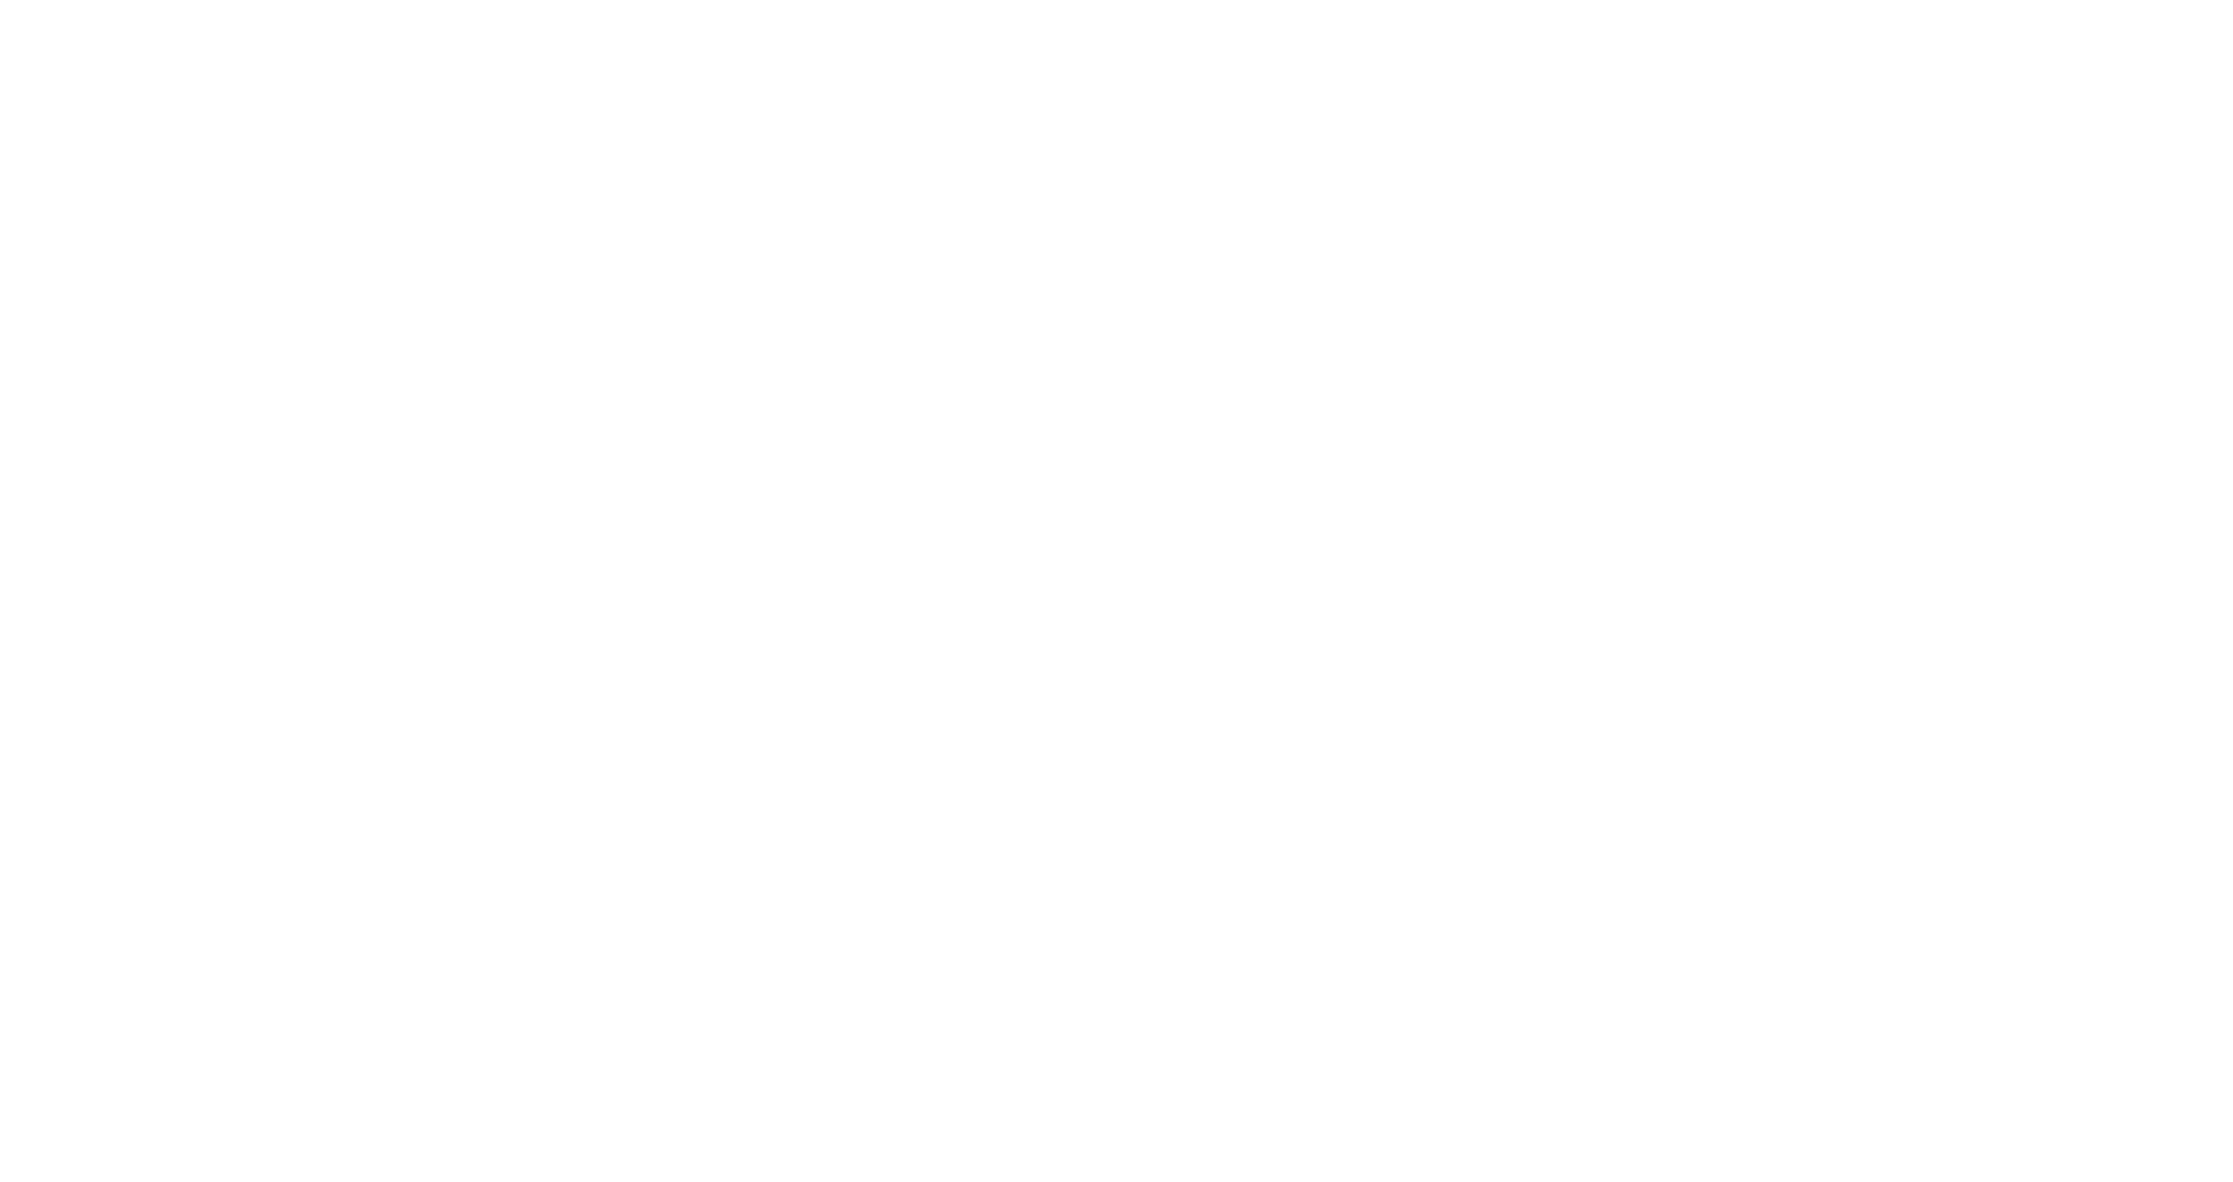 Groupe Conseil Larouche & Associés